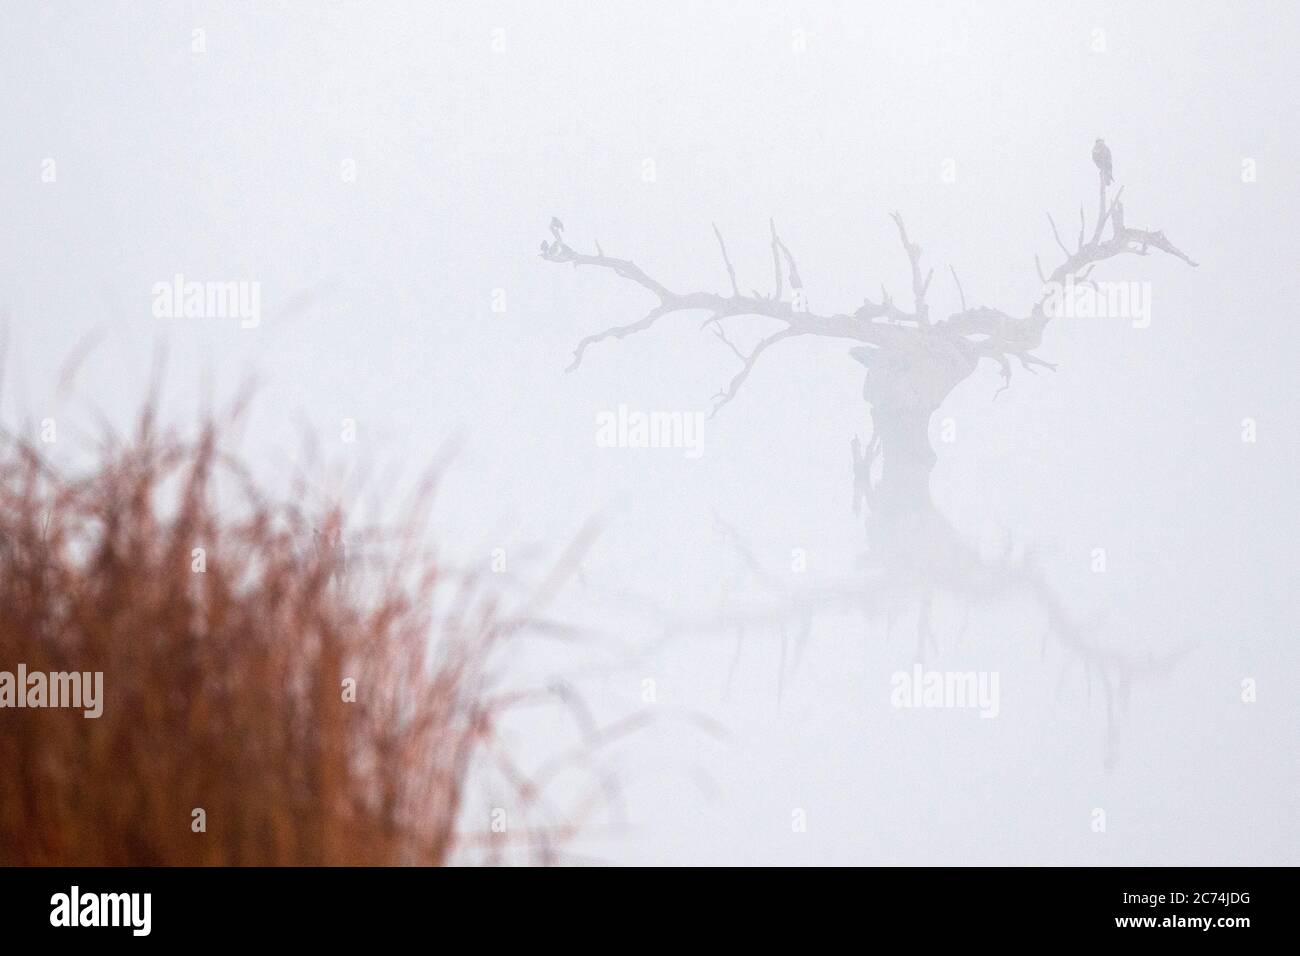 Marsh Harrier occidentale (Circus aeruginosus), arroccato in un albero arido in piedi in acqua durante la nebbia pesante, Spagna, Estremadura Foto Stock